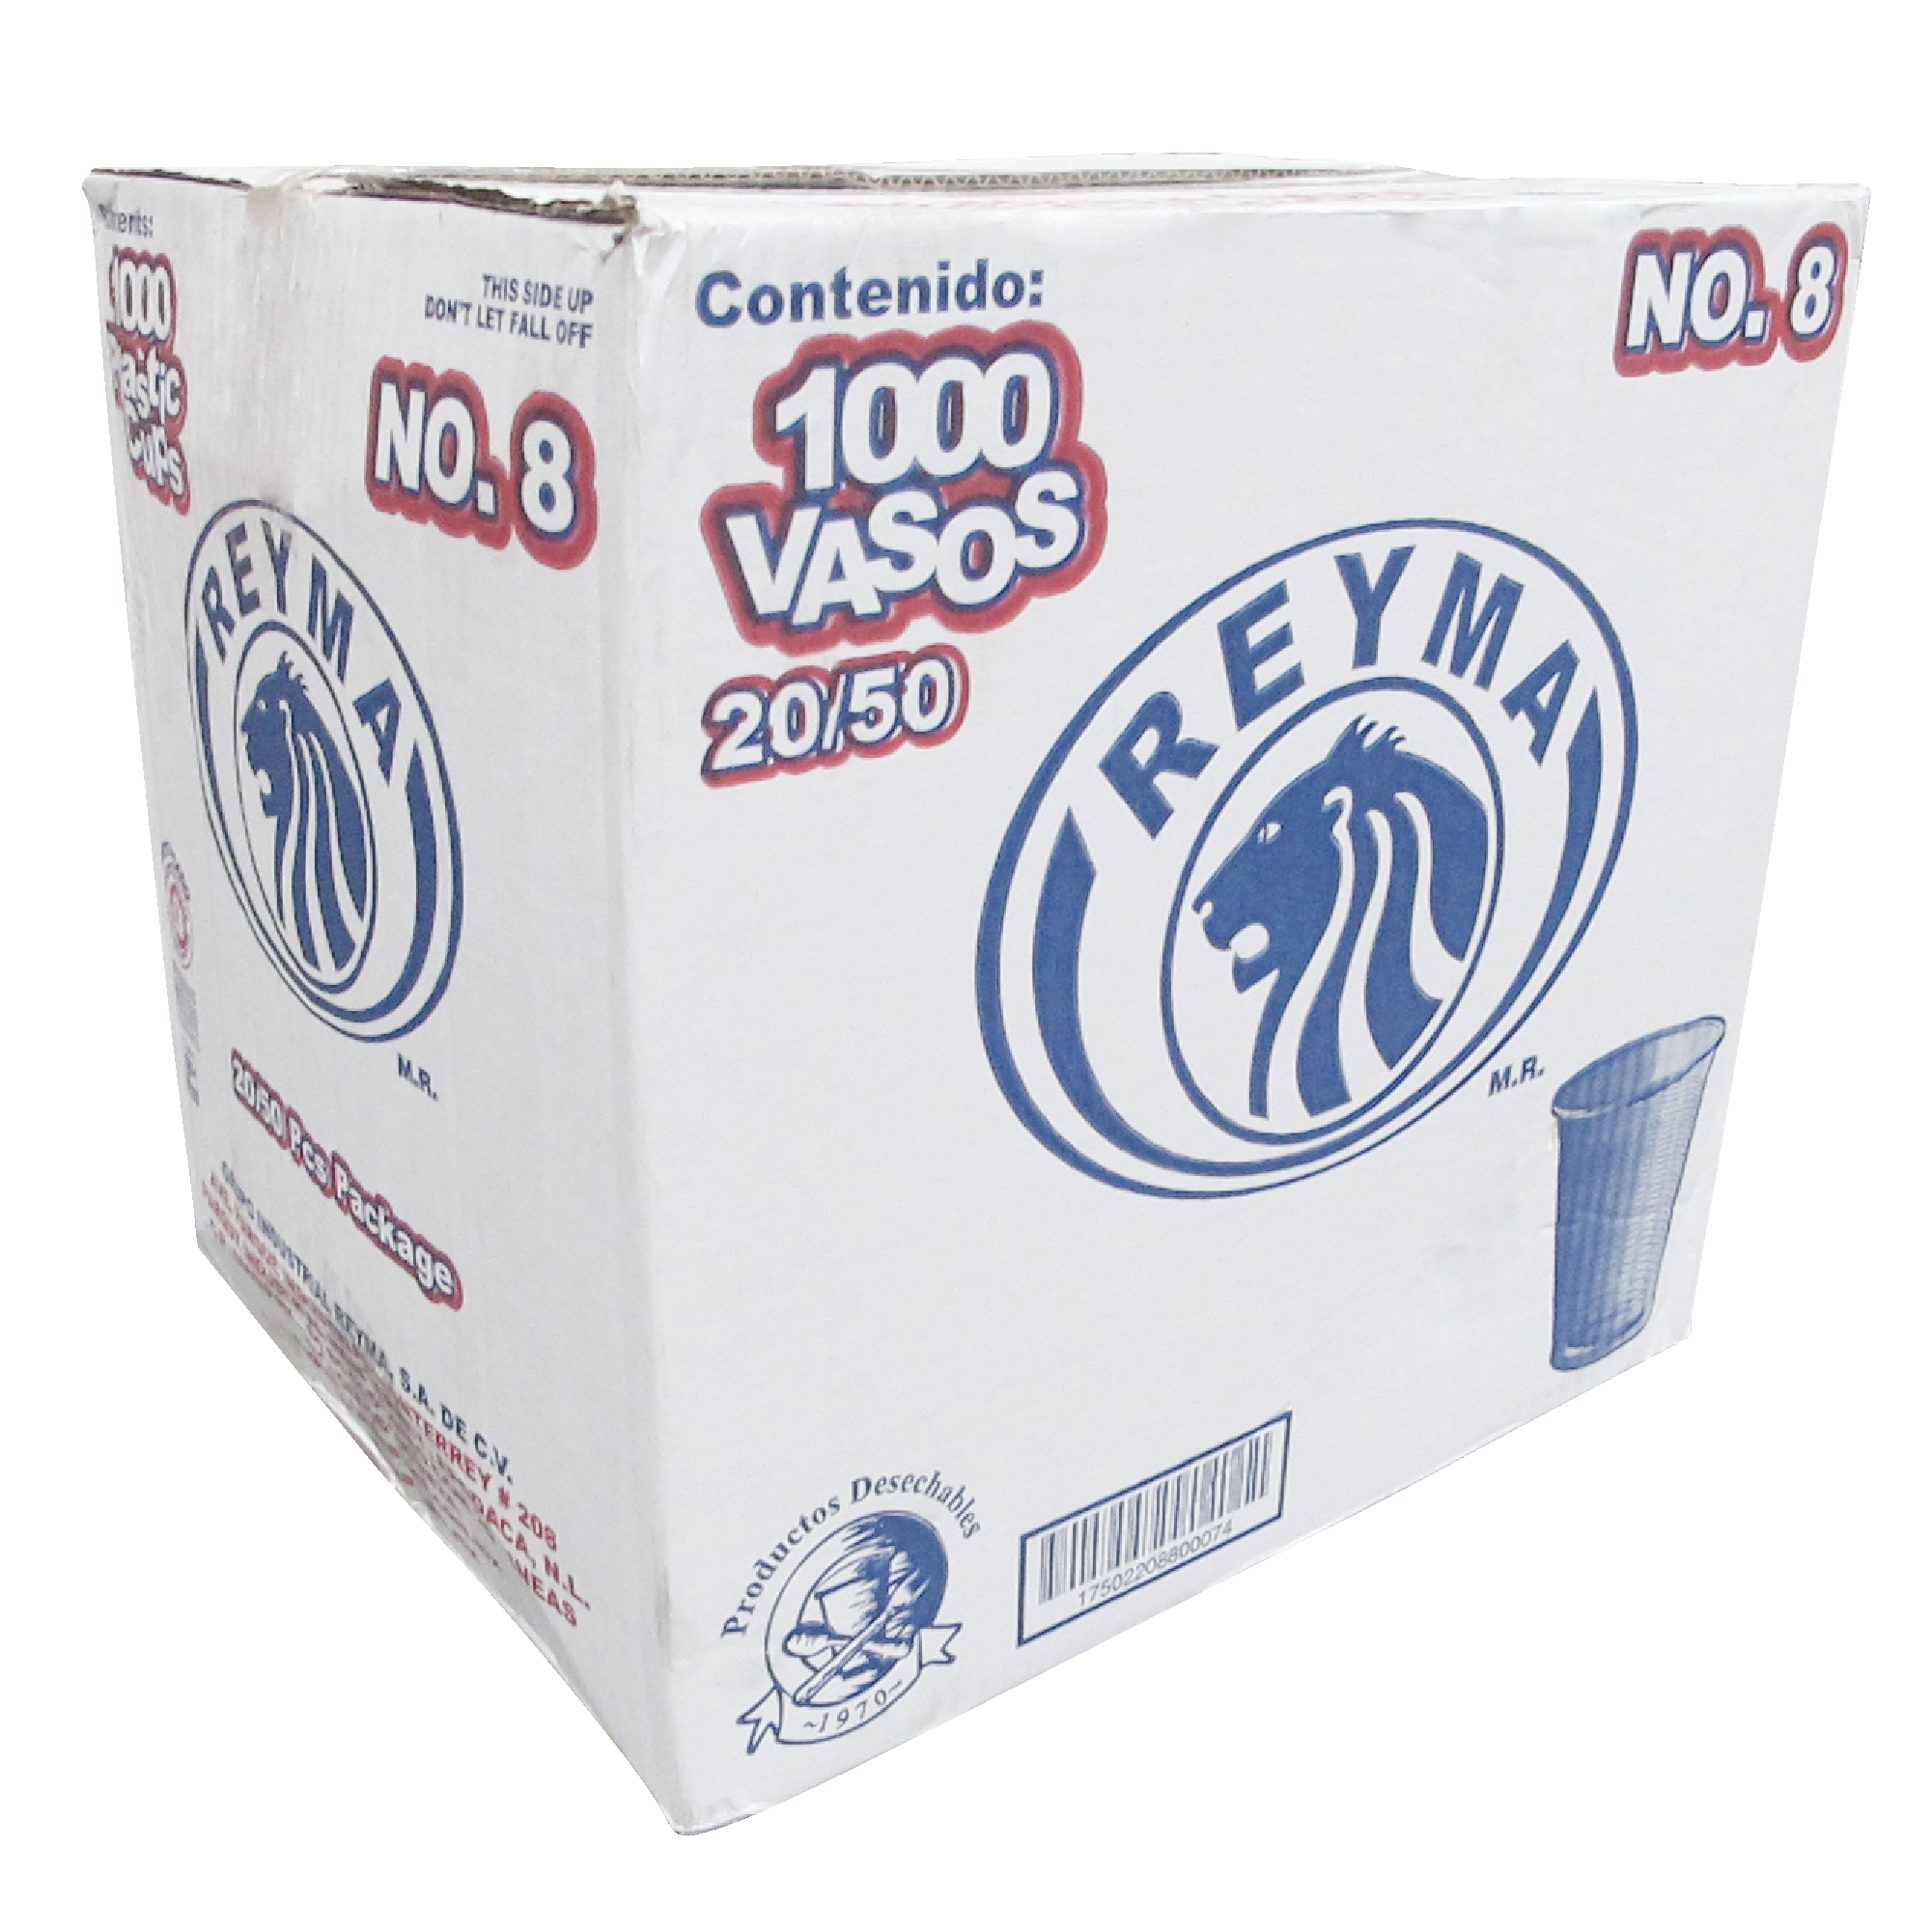 Reyma vaso plástico con capacidad para 8 oz, caja con 1000 piezas en 20 paquetes